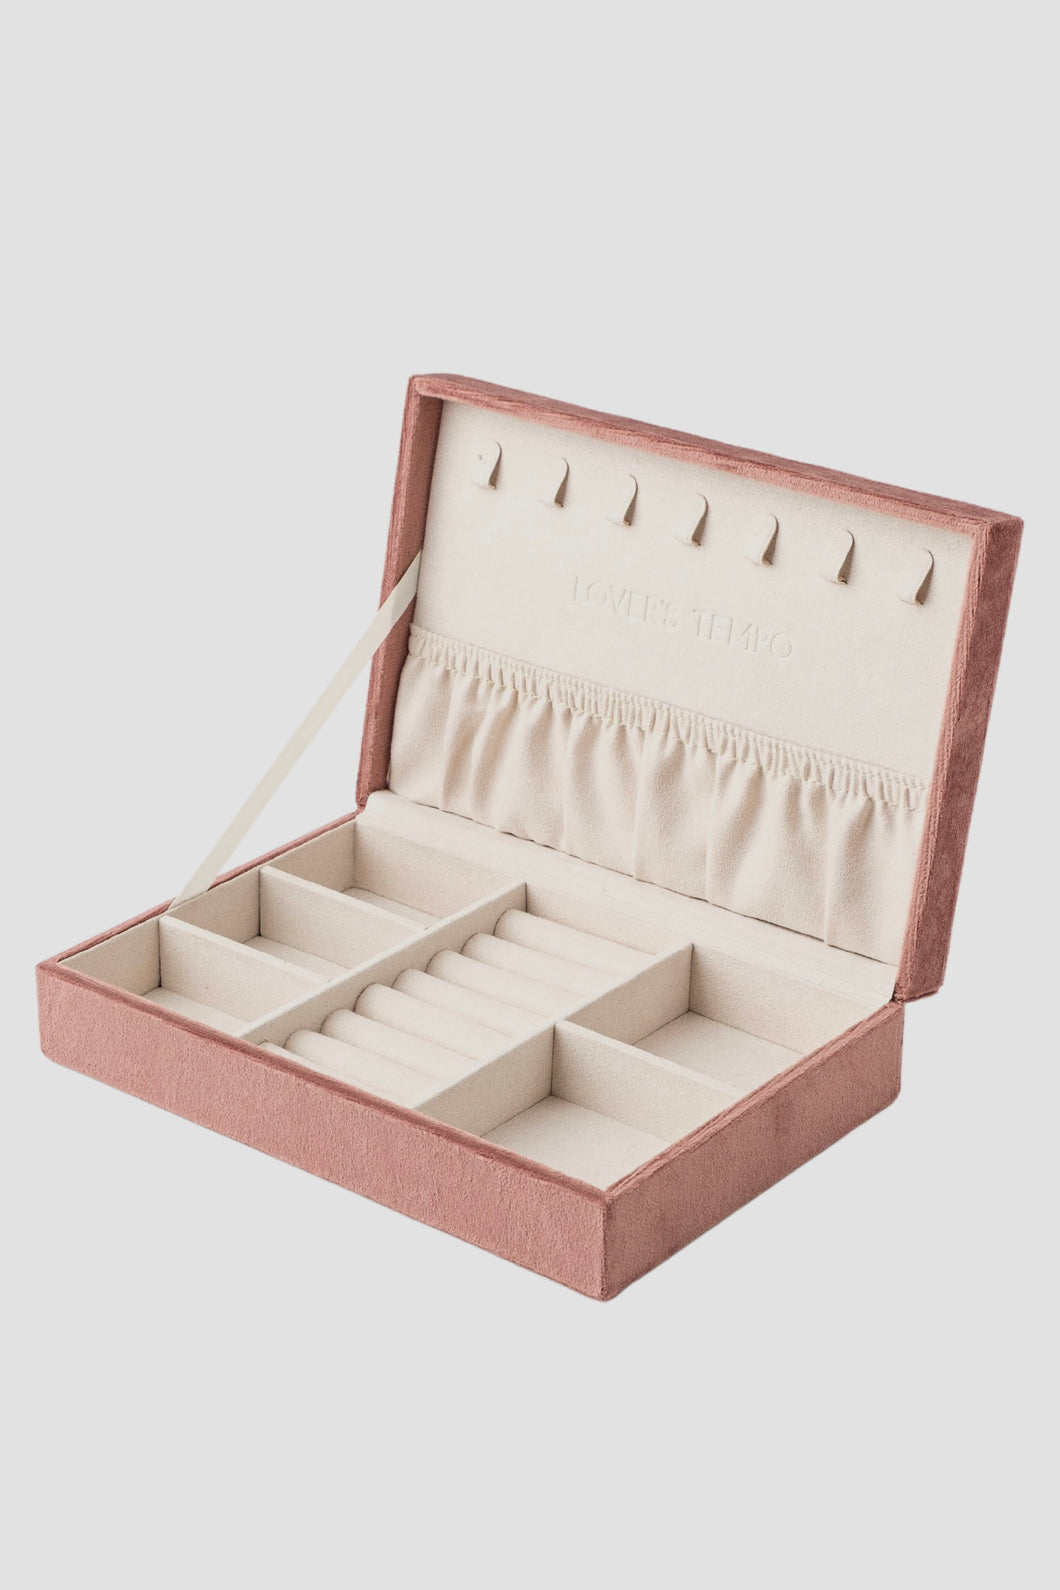 8” Bijoux Jewelry Box - Dusty Rose